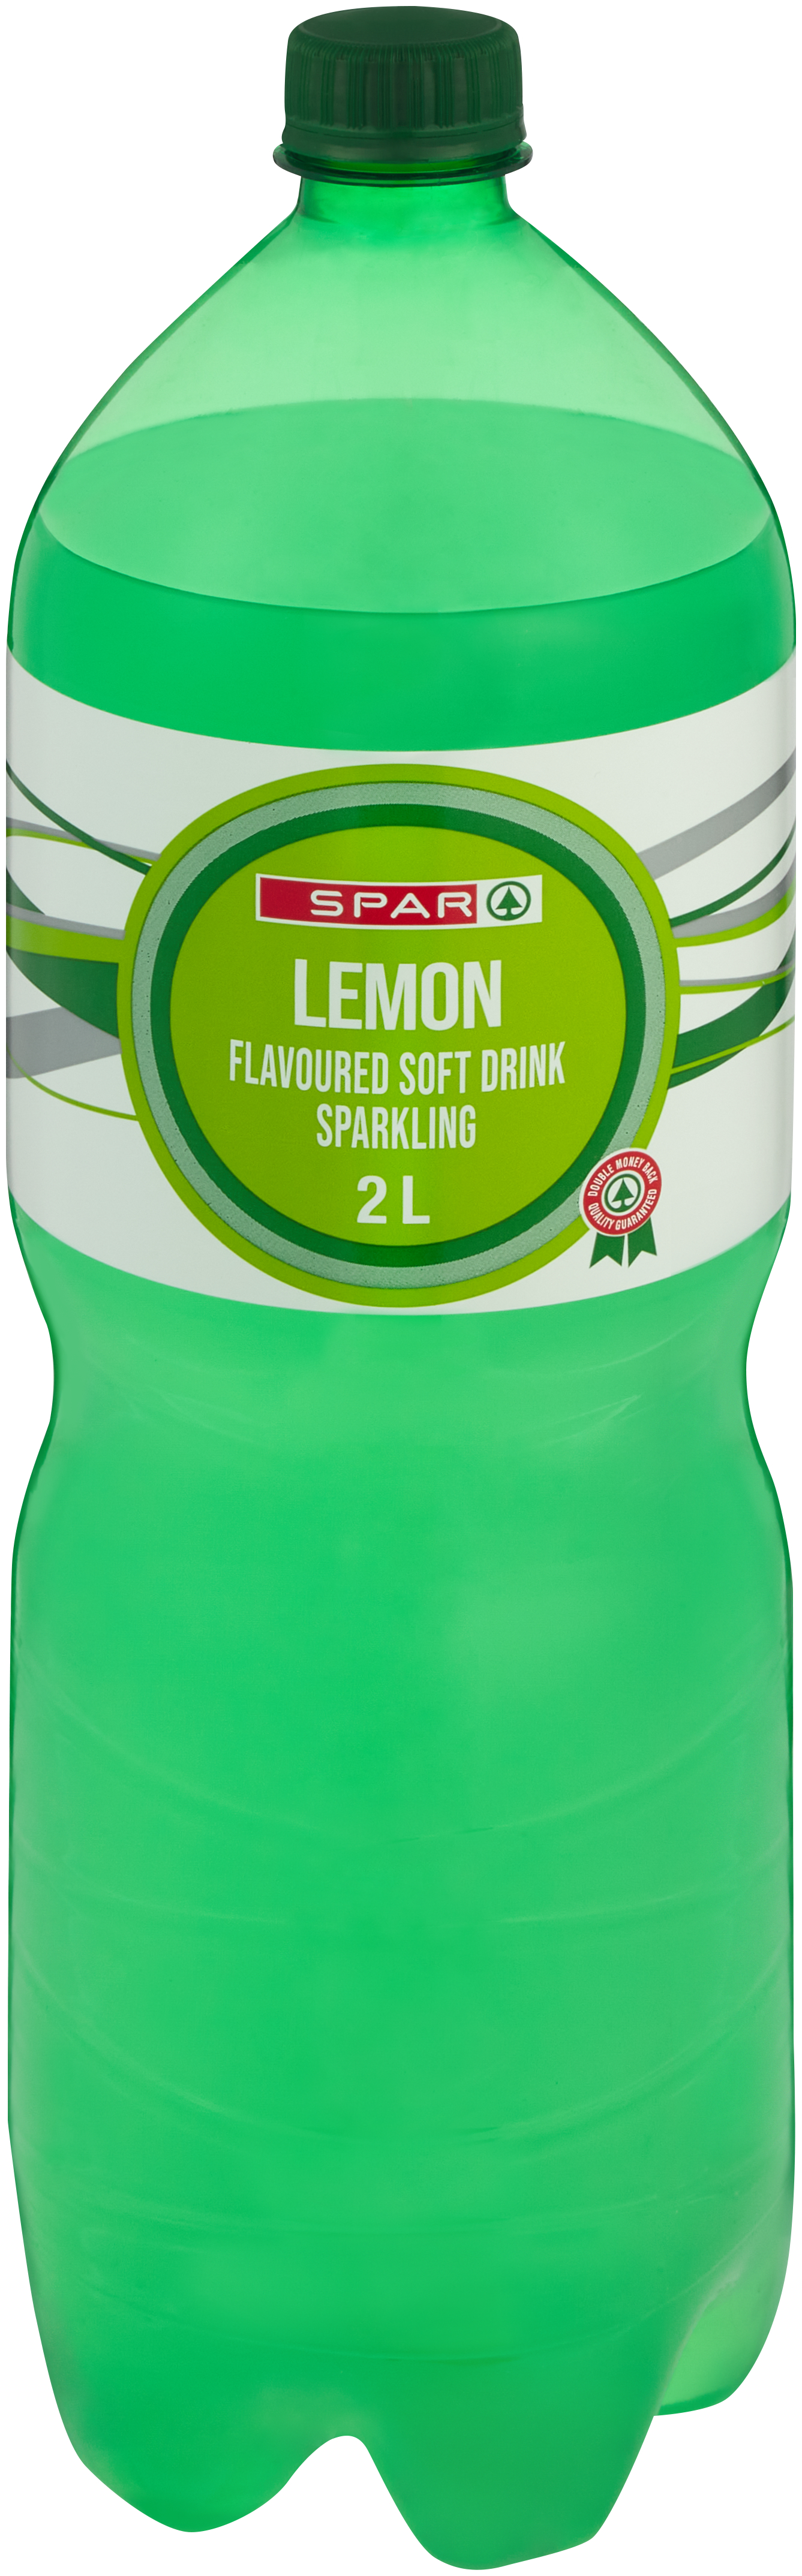 carbonated soft drink lemon flavoured